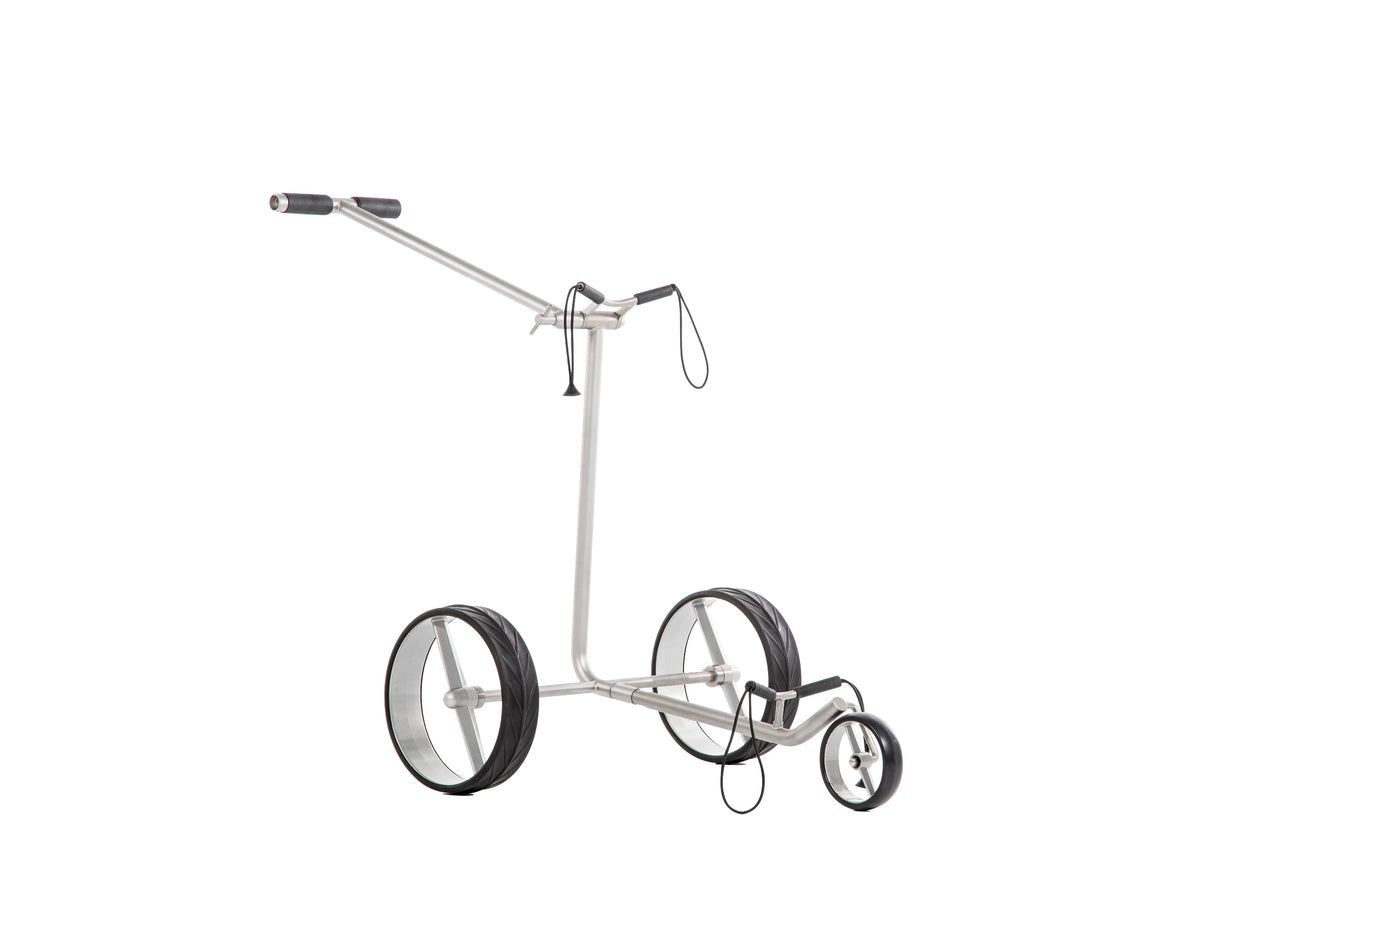 Chariot de golf JuCad Ghost Titan - chariot à pousser pliable avec poignée confortable